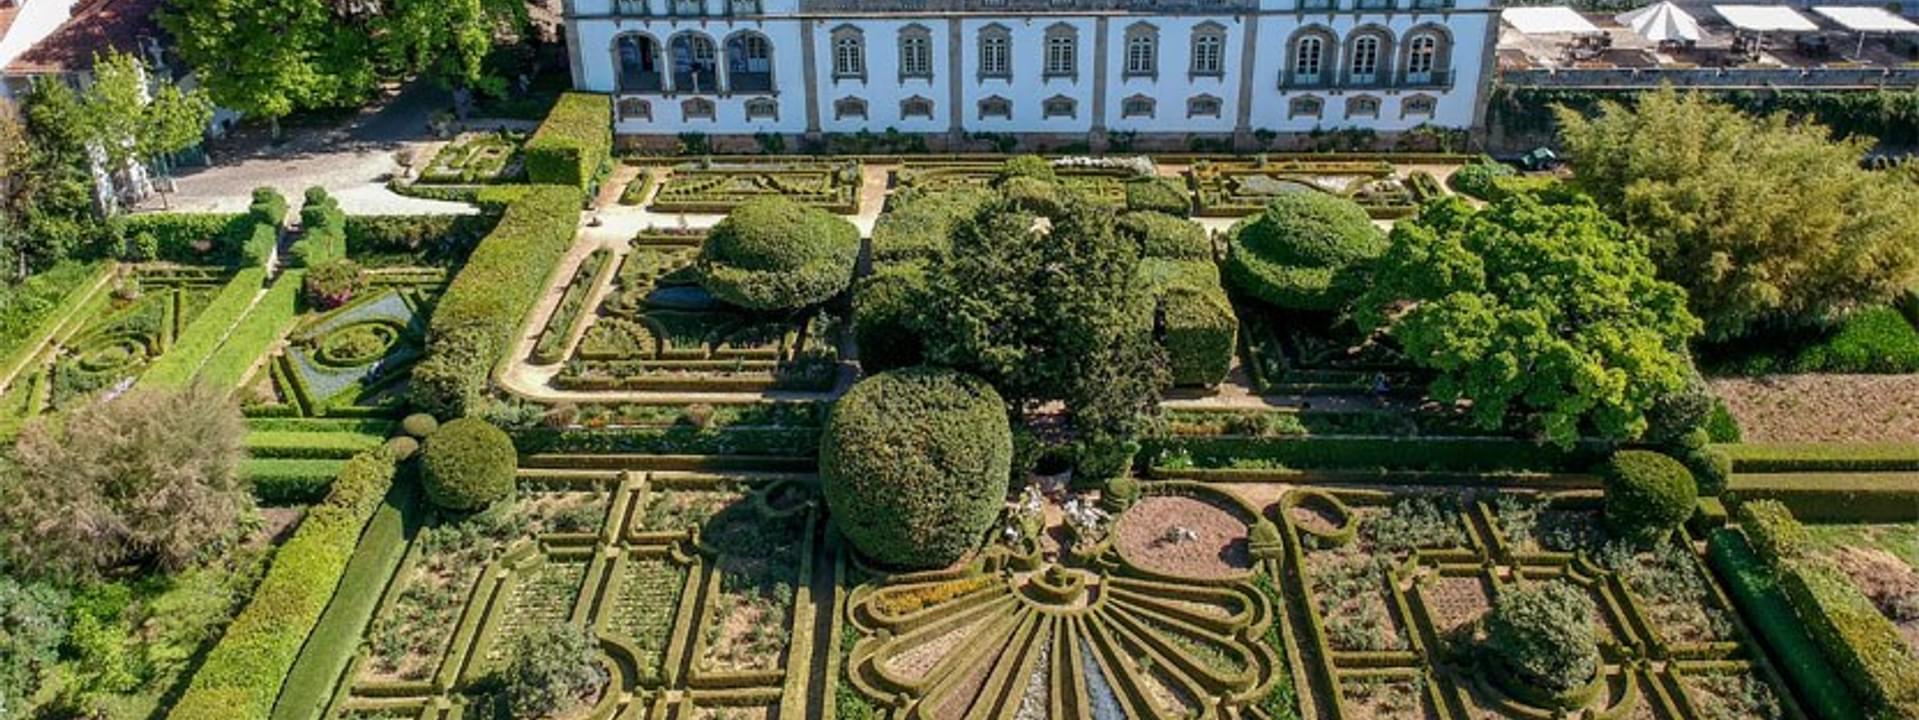 The gardens of Casa da Ínsua